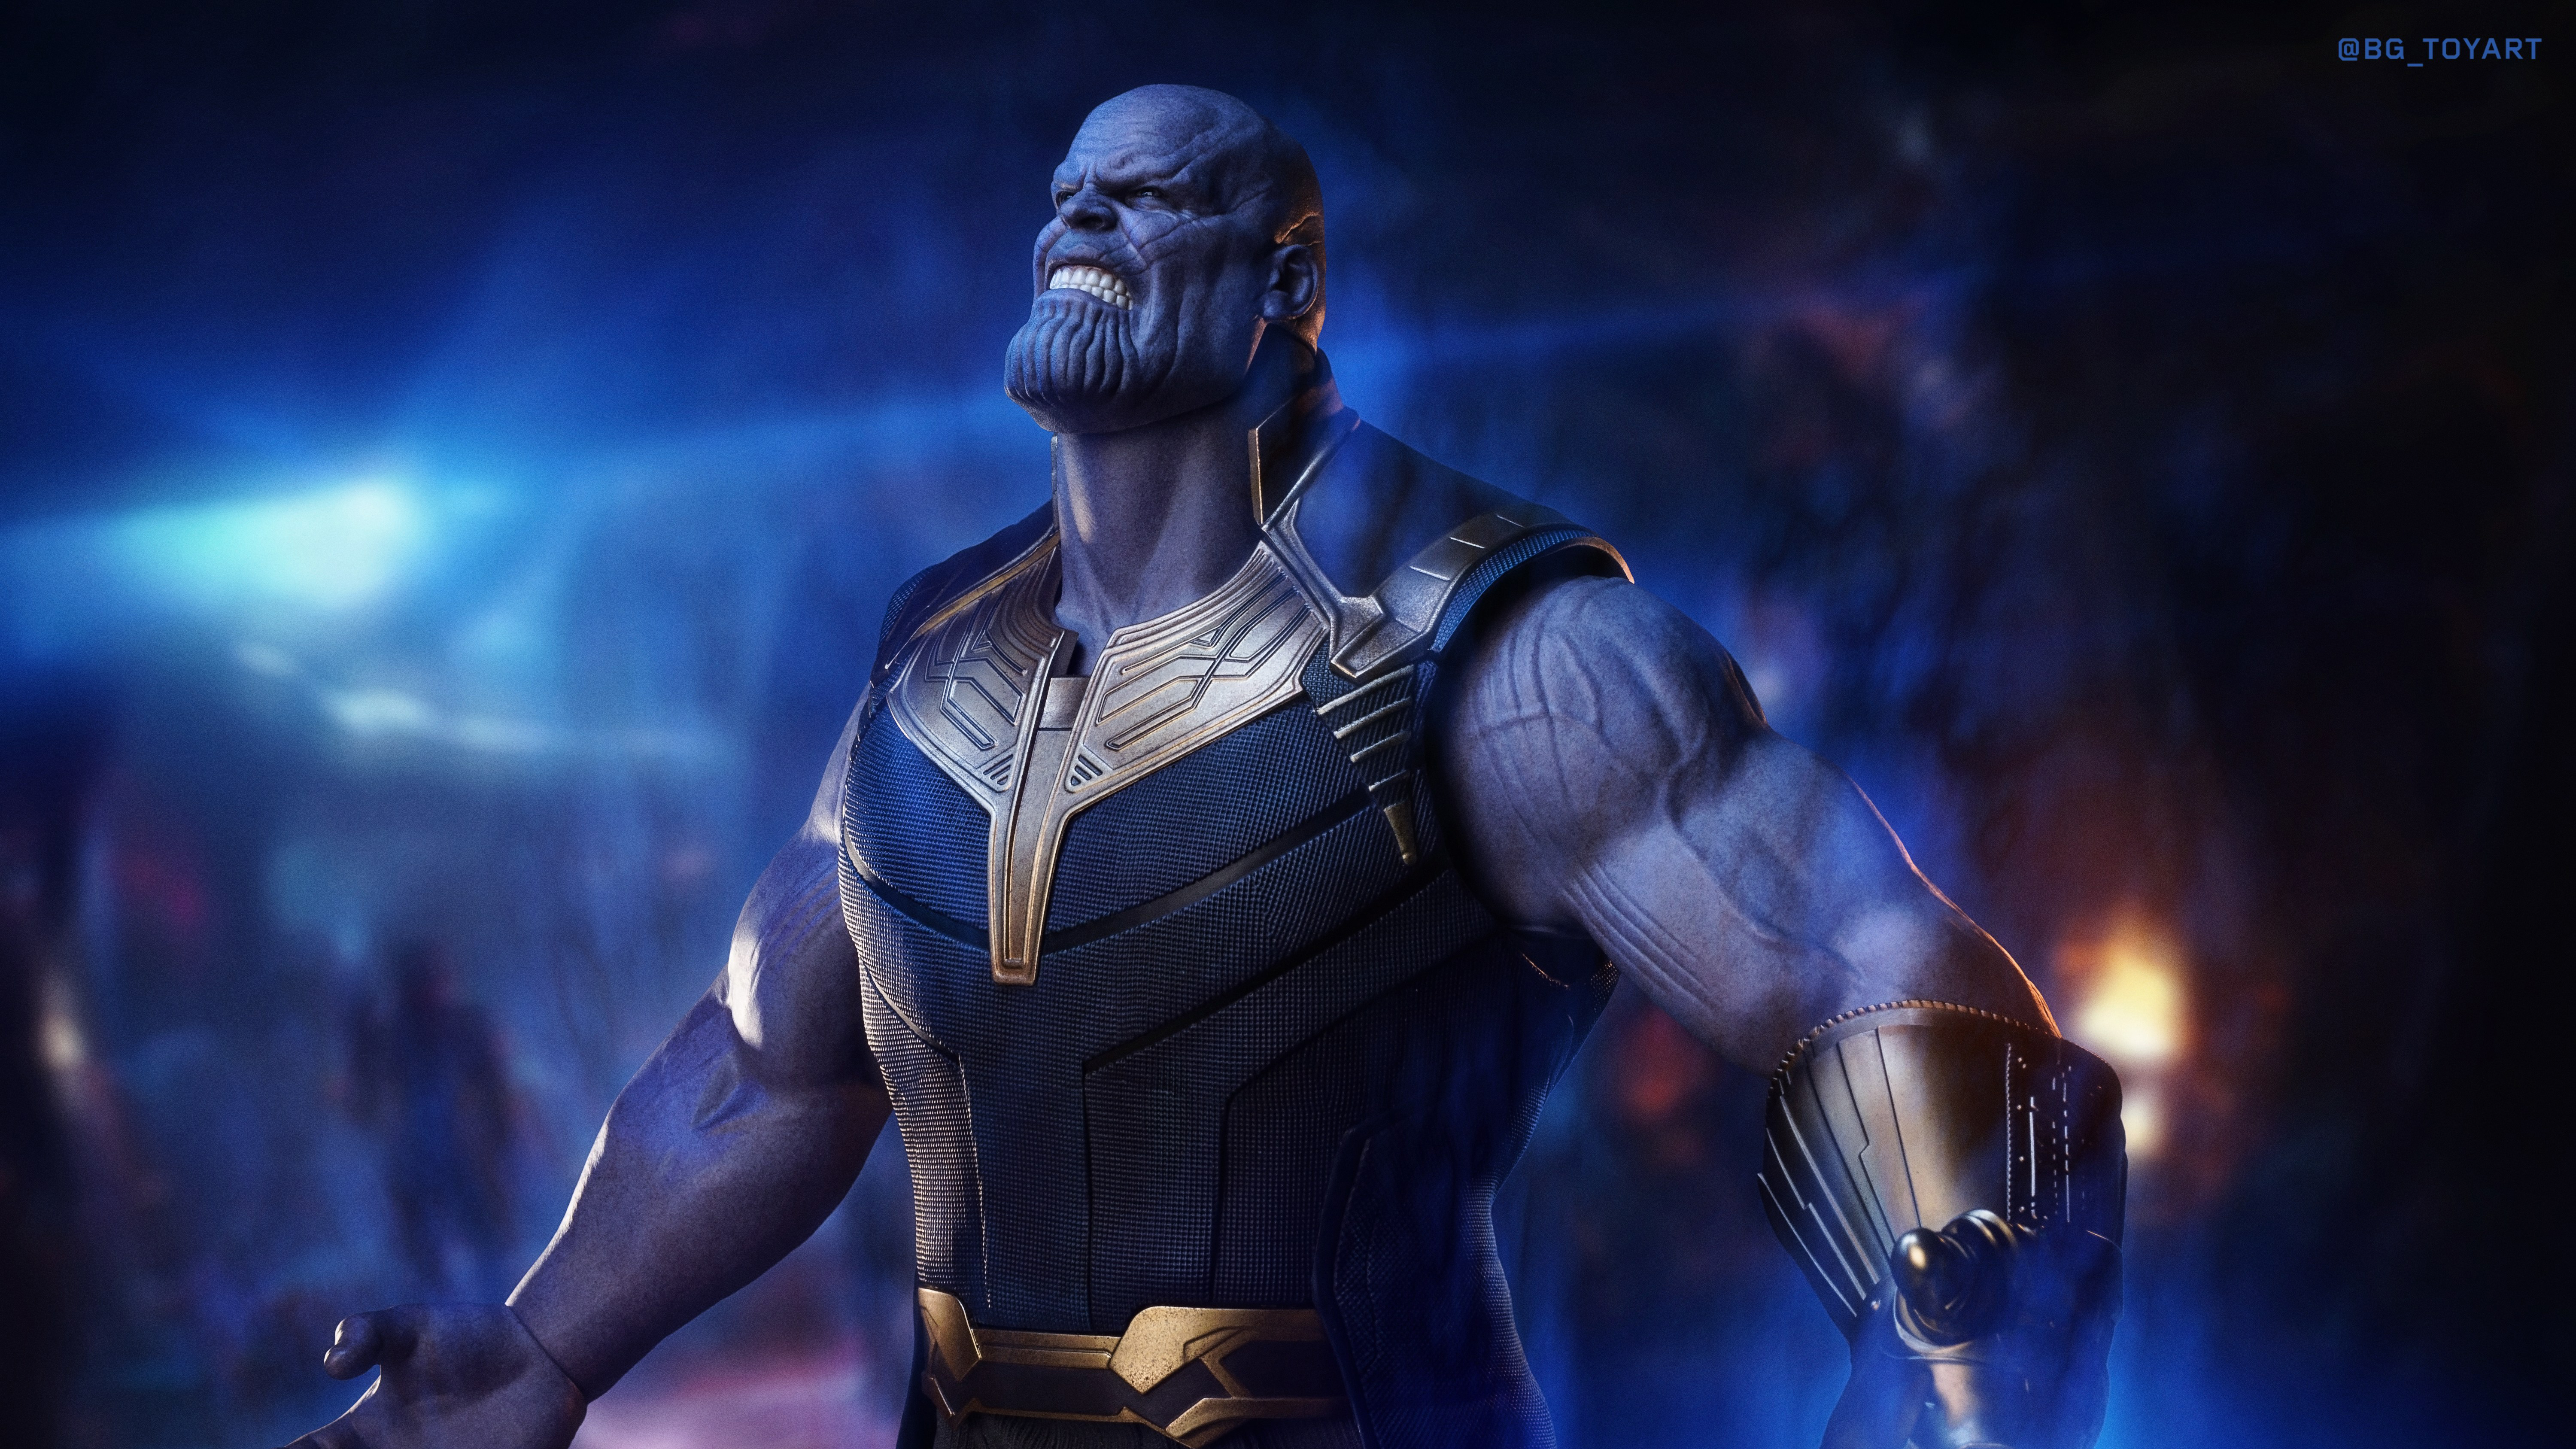 Descarga gratuita de fondo de pantalla para móvil de Los Vengadores, Películas, Thanos, Vengadores: Guerra Infinita.